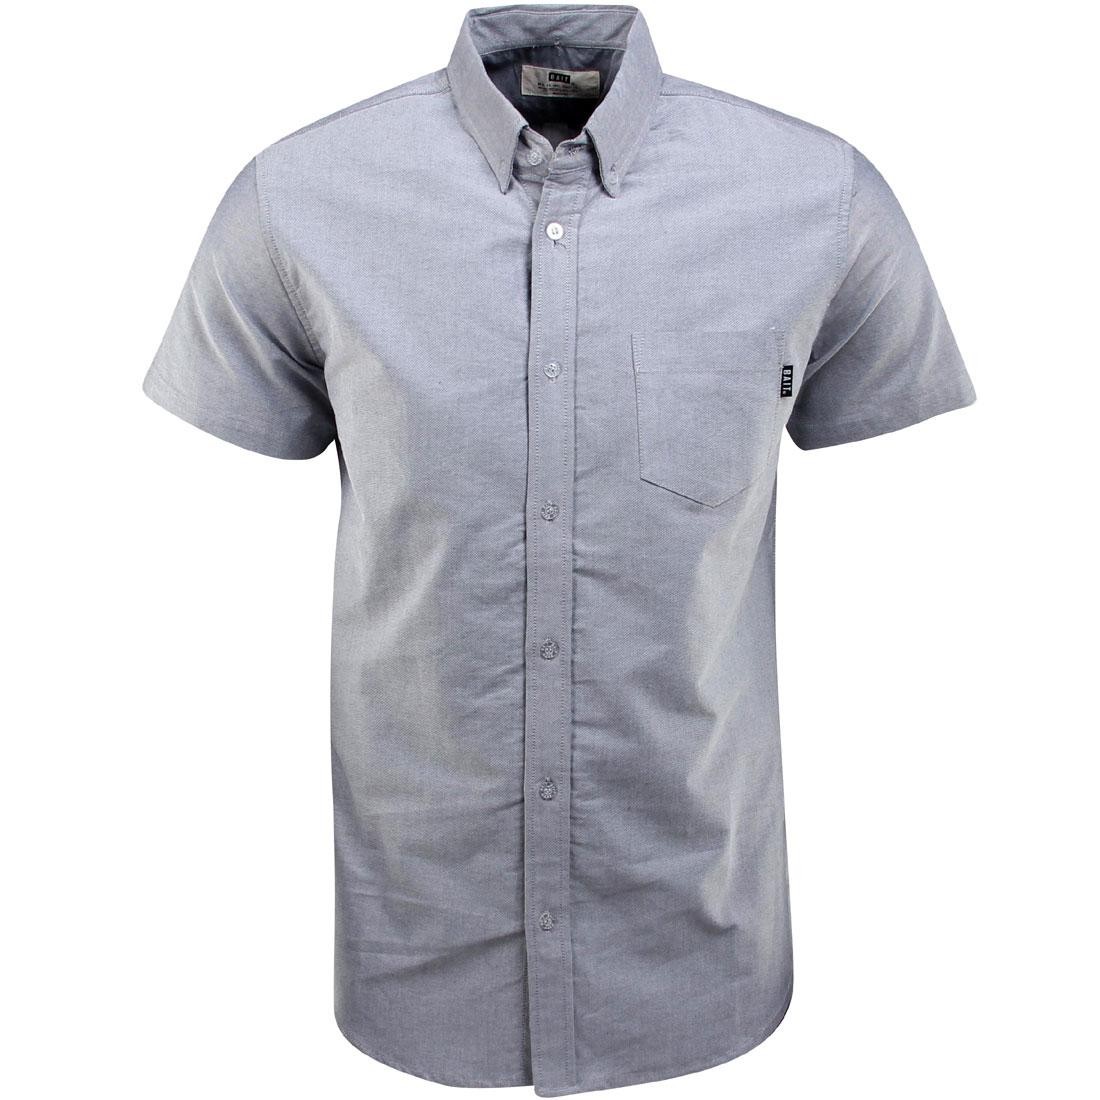 Cheap Urlfreeze Jordan Outlet Oxford Short Sleeve tiro shirt (gray)